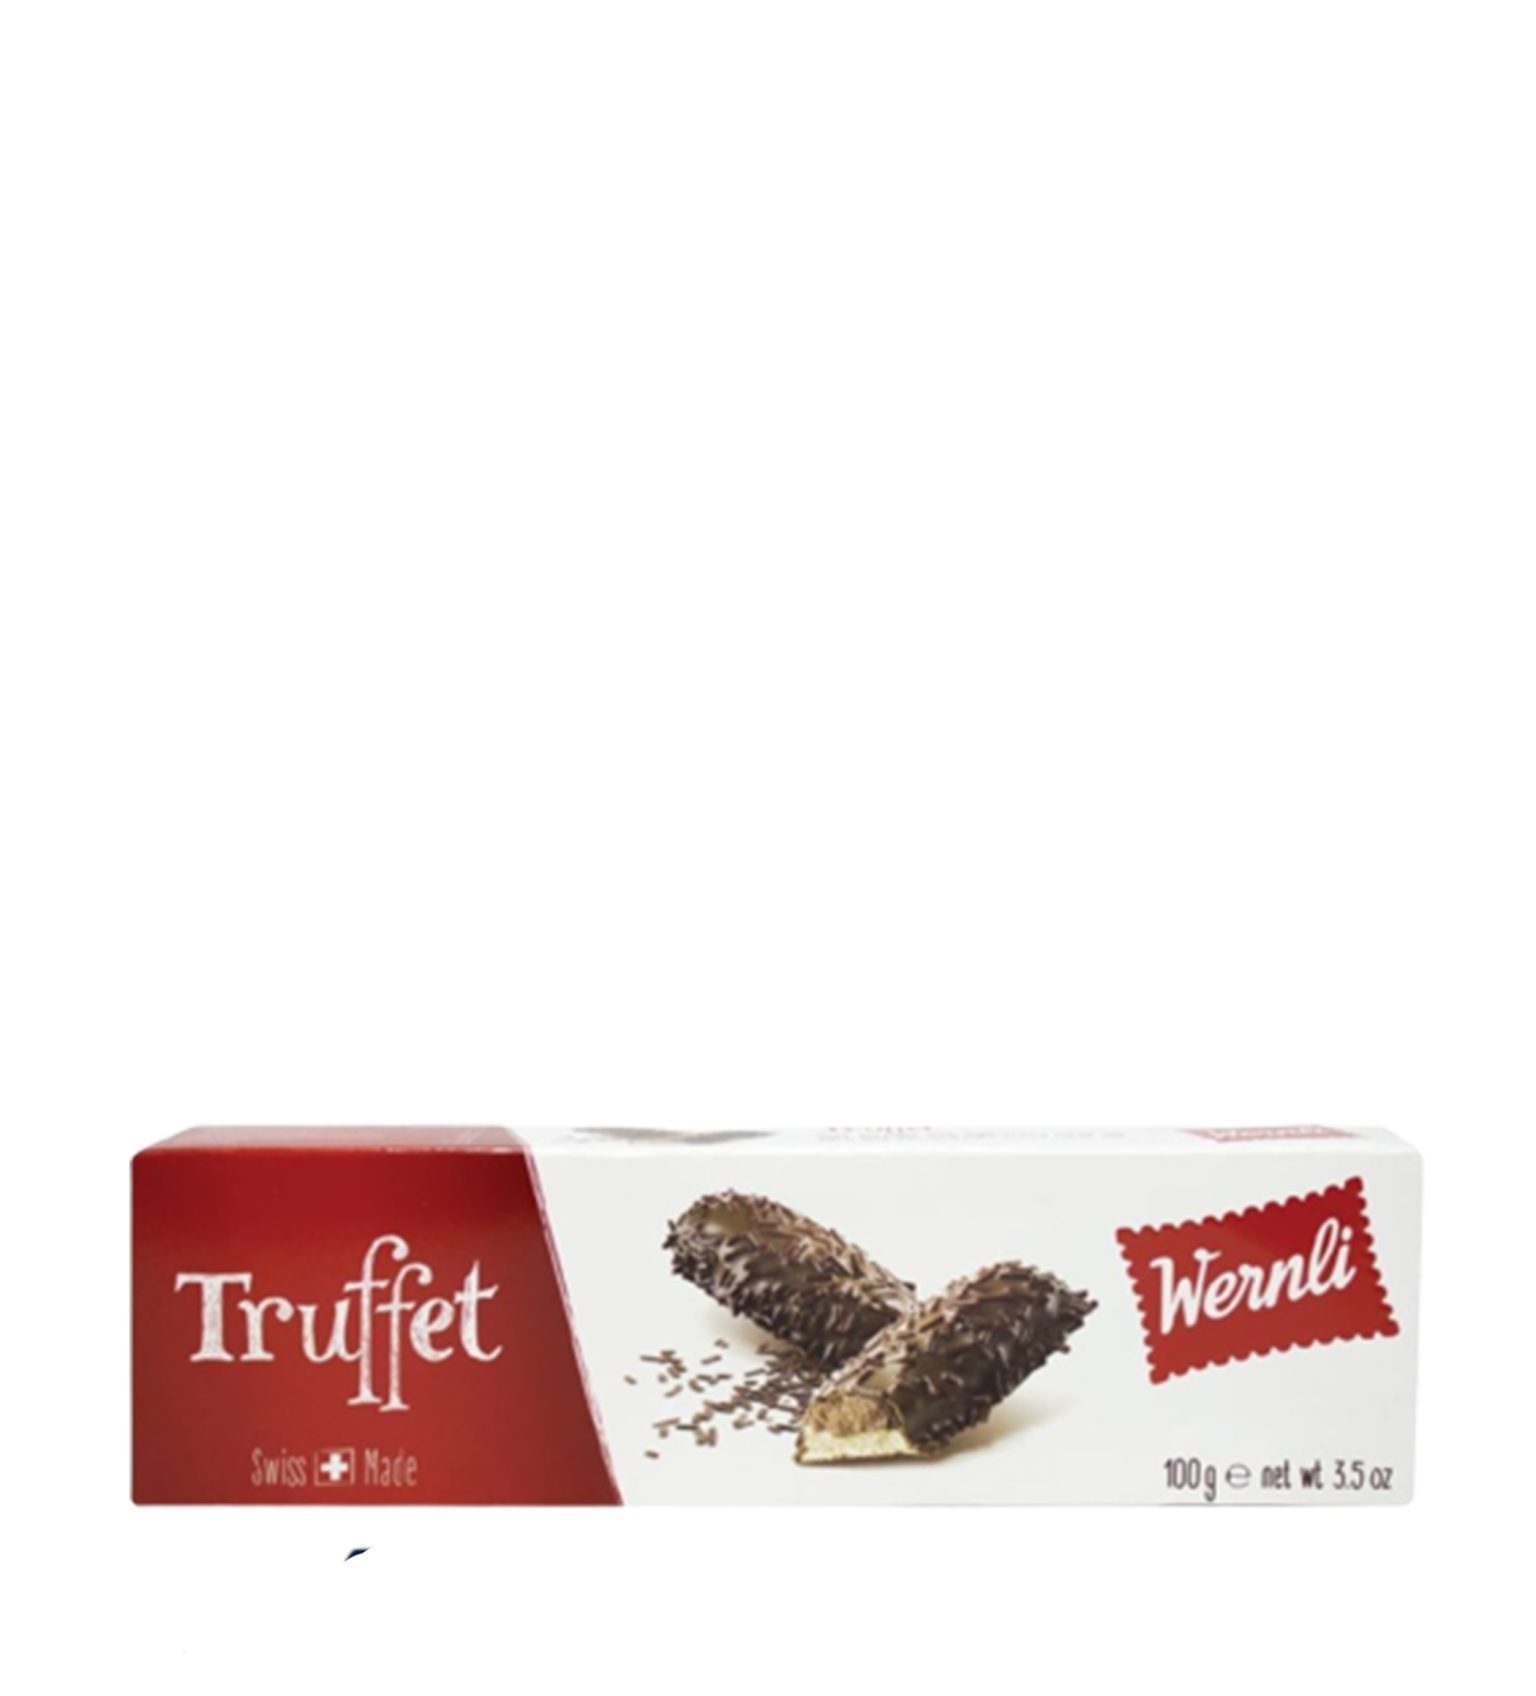 Wernli Biscuit Truffet 100g-image